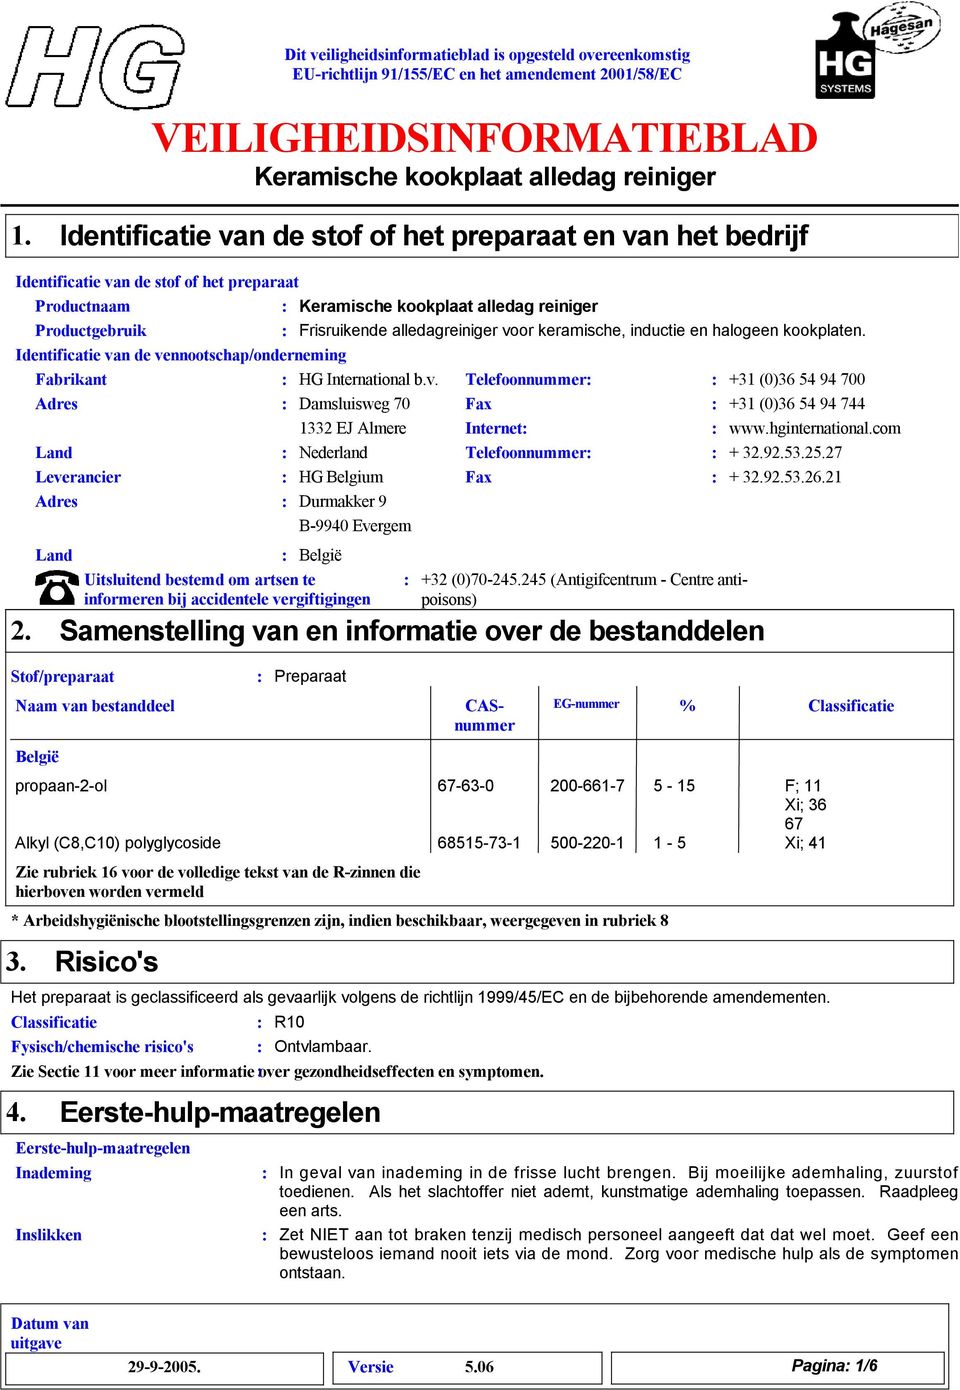 kookplaten. Identificatie van de vennootschap/onderneming Fabrikant HG International b.v. Adres Damsluisweg 70 12 EJ Almere Land Nederland Leverancier HG Belgium Adres Durmakker 9 B-9940 Evergem 2.